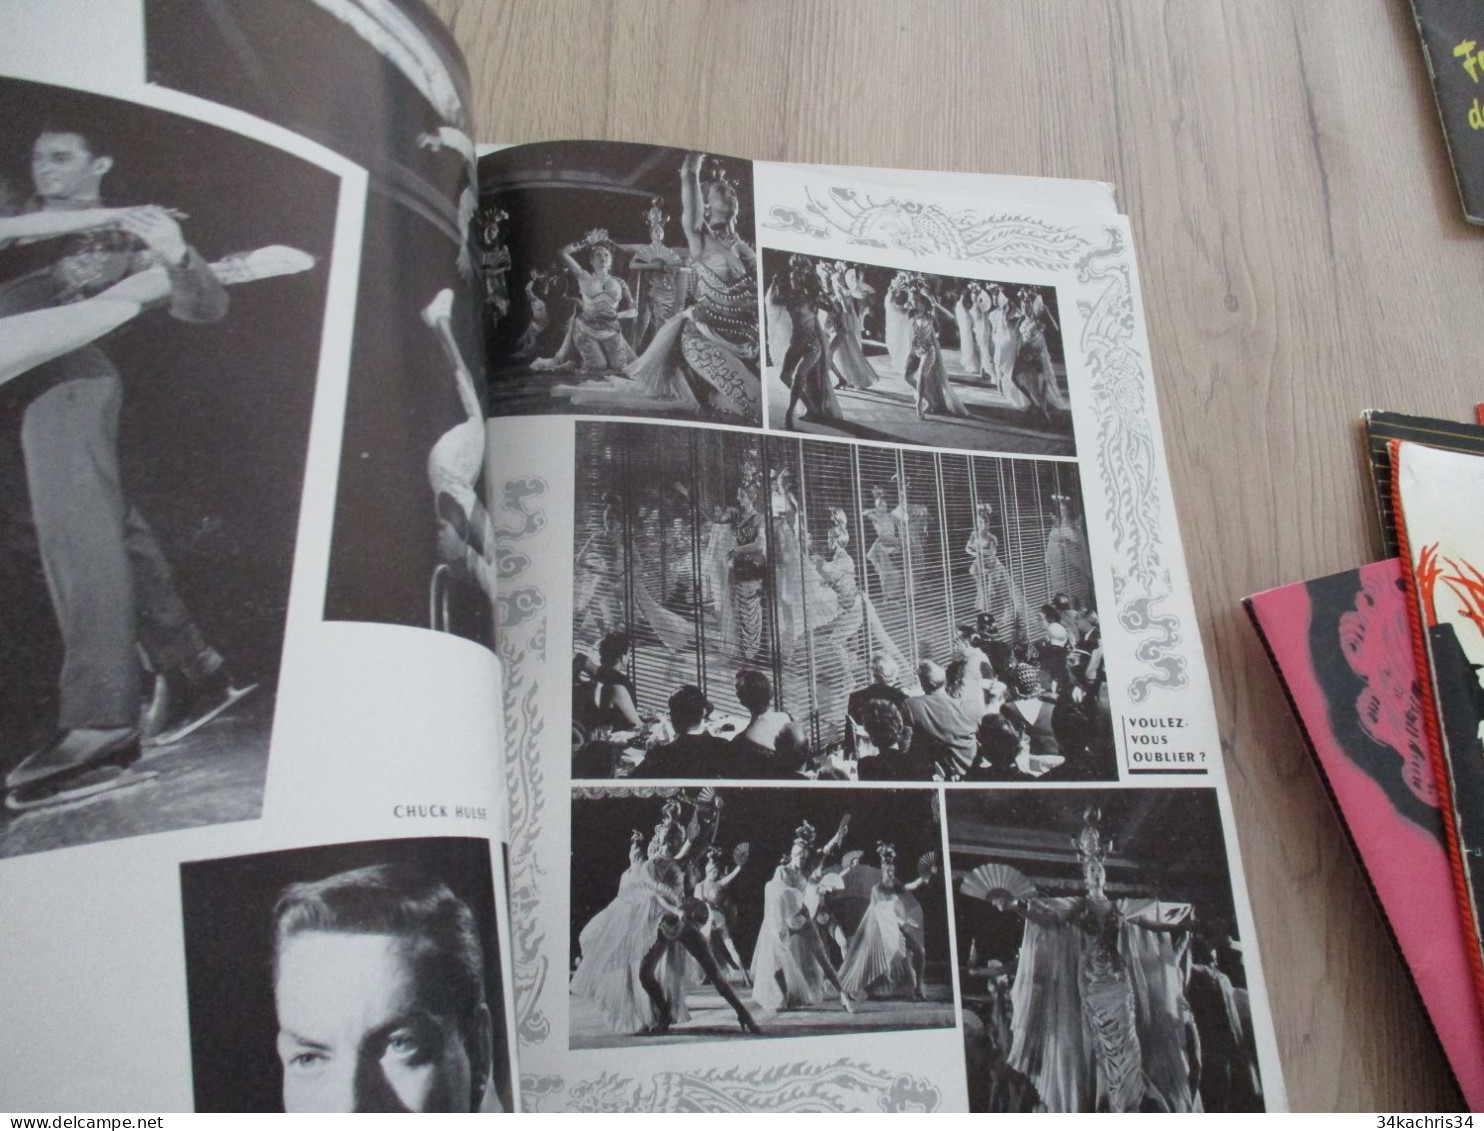 STC 35 Programme illustré par Brémot Lido 1955 Paris Nu NUde musique spectacle  cirque magie.....Pubs